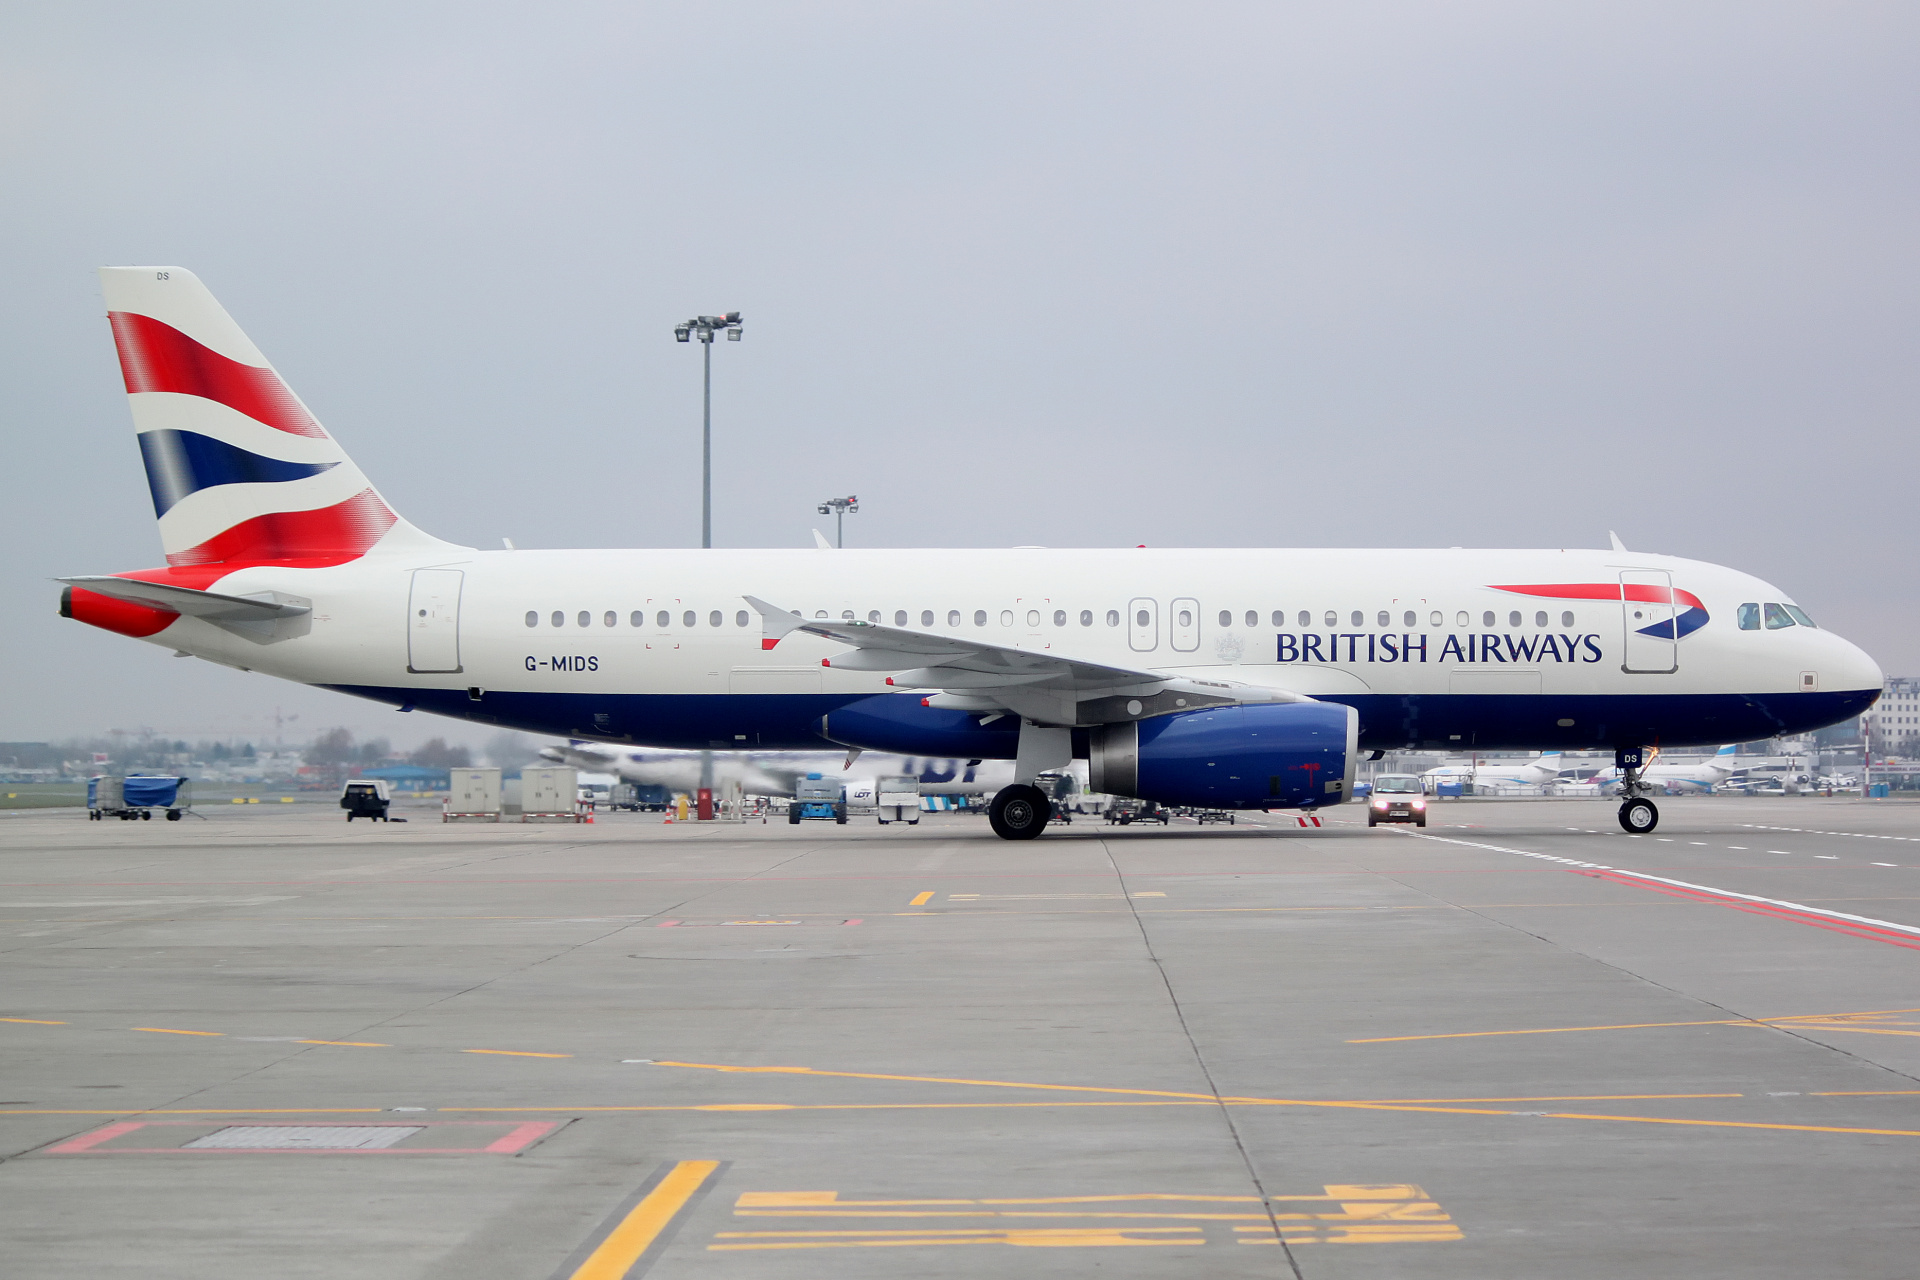 G-MIDS (Aircraft » EPWA Spotting » Airbus A320-200 » British Airways)